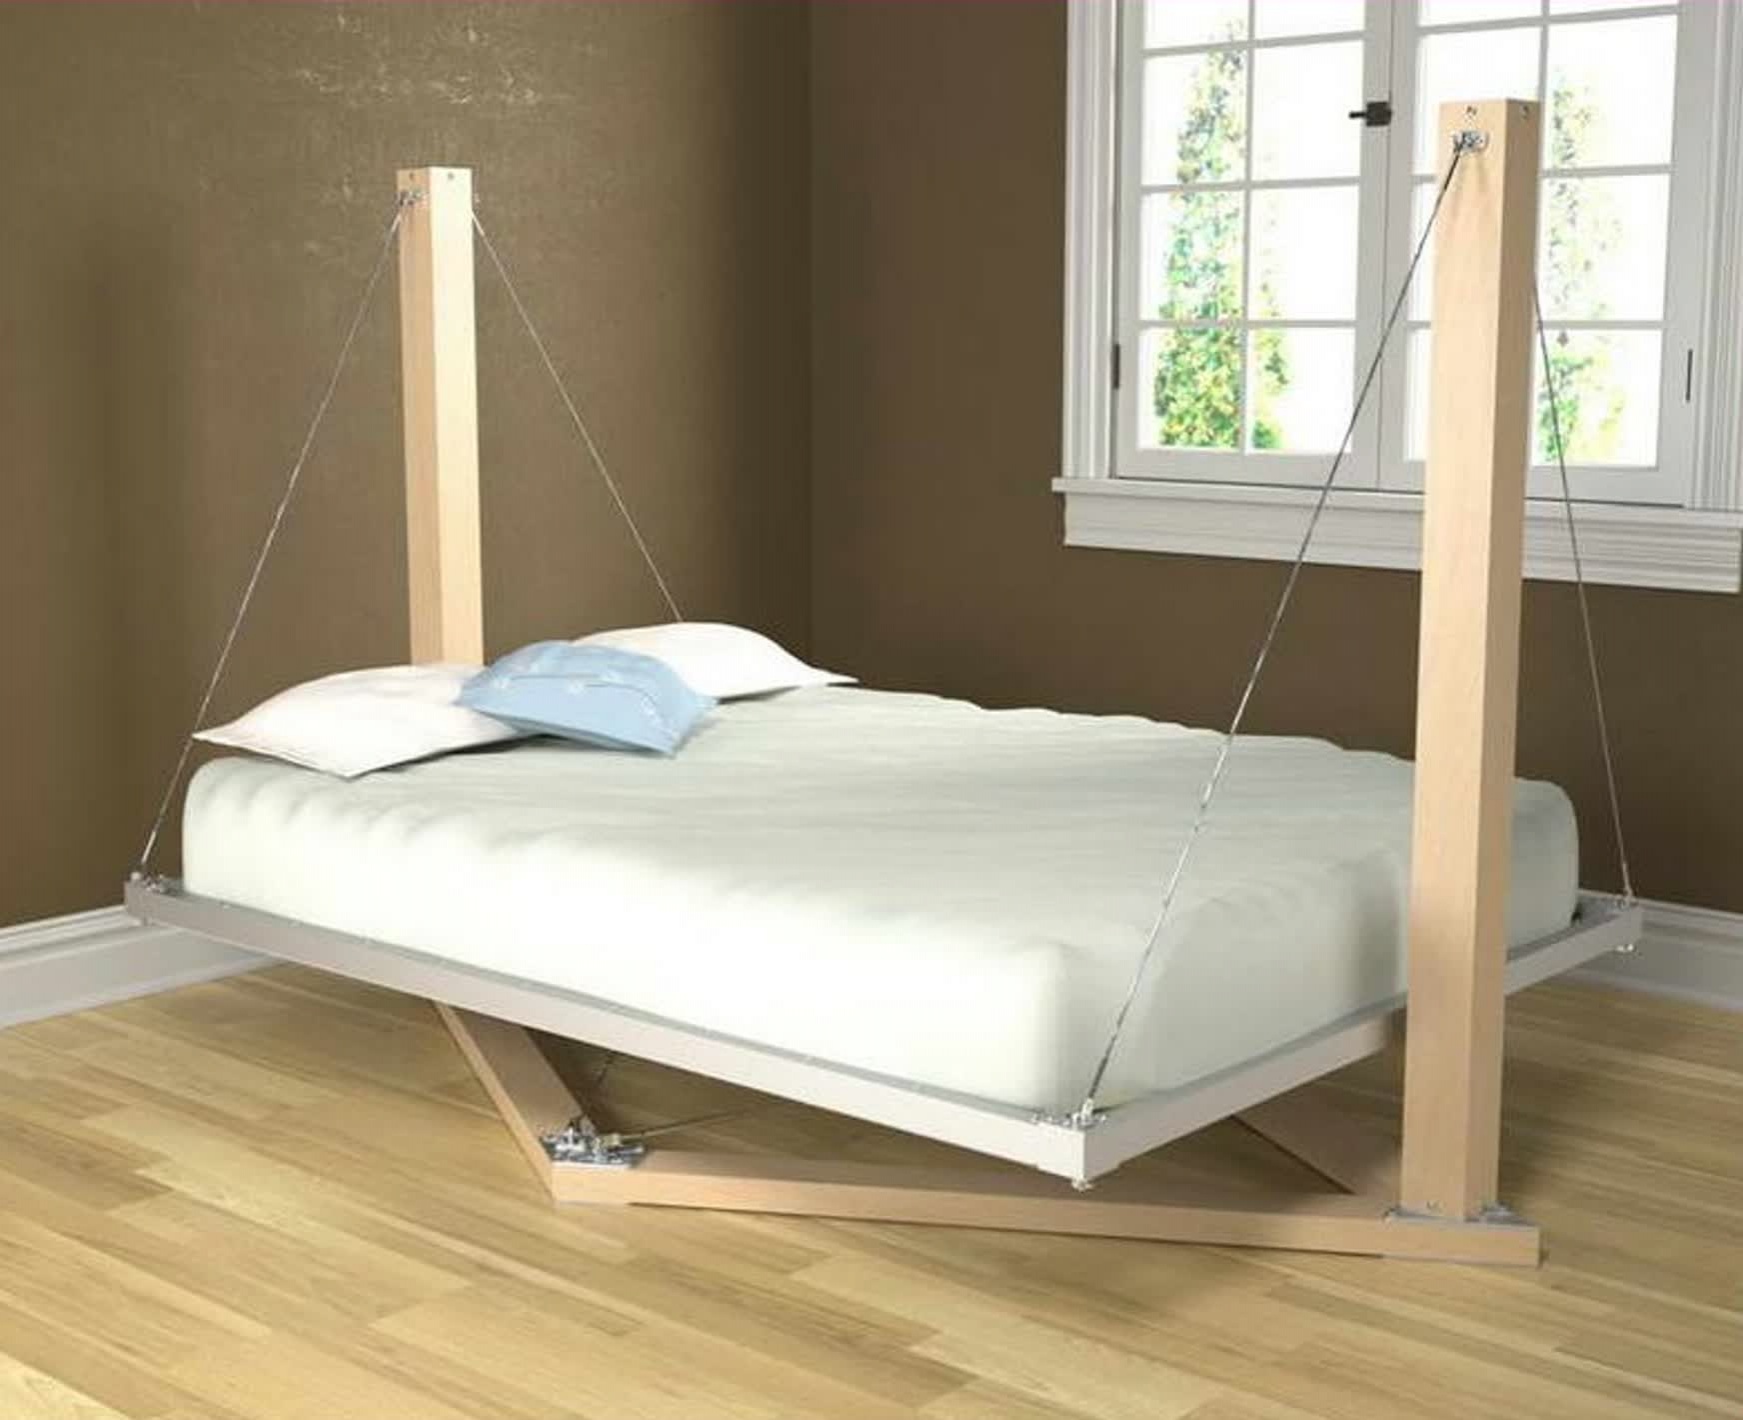 Fast bed. Подвесная кровать. Оригинальные кровати. Необычные кровати. Необычные кровати двуспальные.